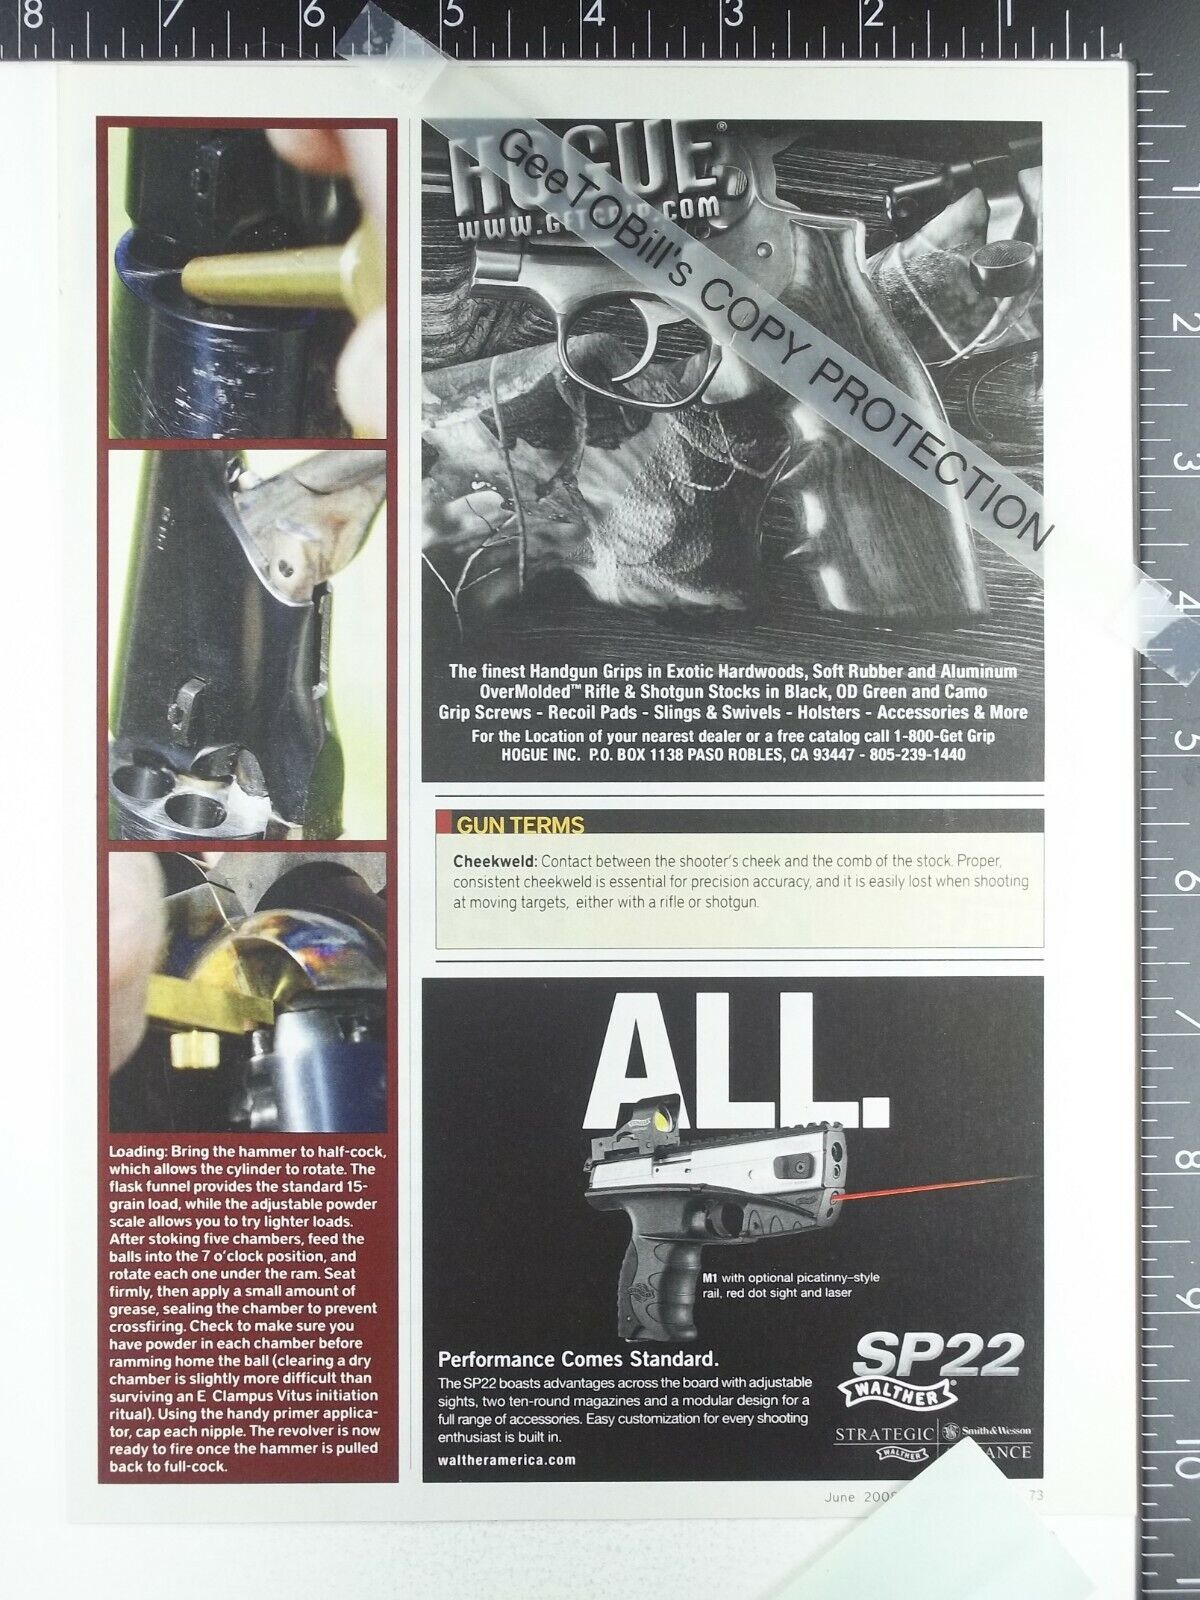 2008 ADVERTISING ADVERTISEMENTS- Walther M1 SP22 pistol gun handgun, Hogue grips